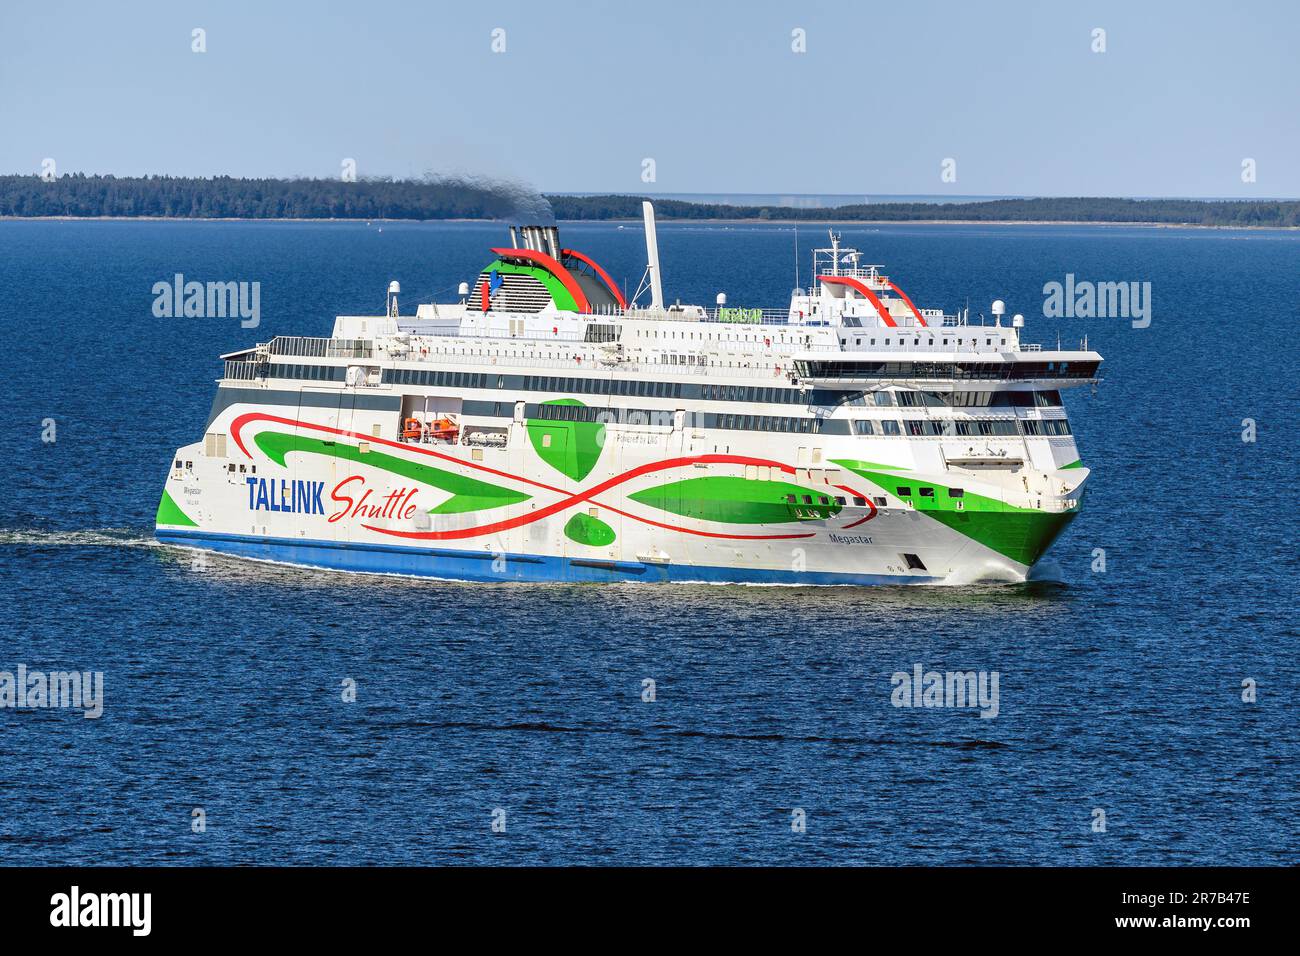 Megastar est un ferry fonctionnant au GNL et exploité par la compagnie de ferry estonienne Tallink dans le cadre de son service « Shuttle » entre Tallinn et Helsinki. Banque D'Images